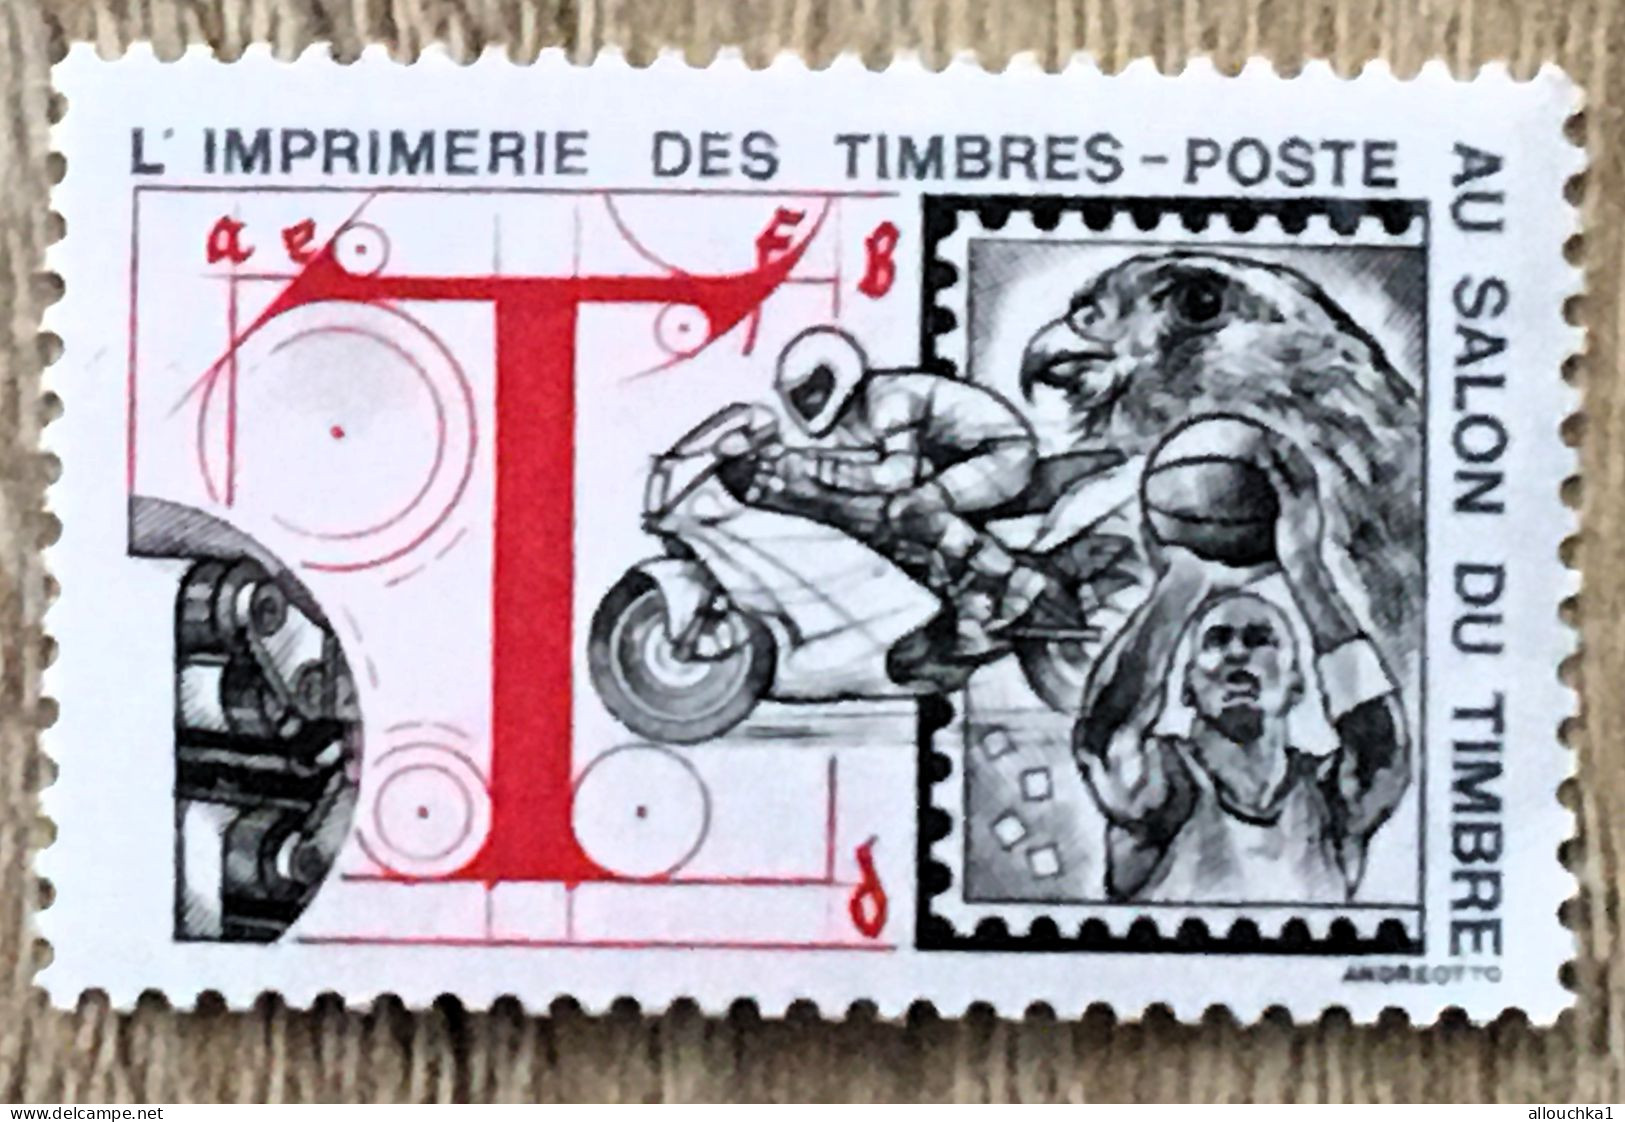 Imprimerie Timbres Poste Au Salon Du Timbre-2 Timbres Vignette**Expo-Philatélique-Erinnophilie-[E]Stamp-Sticker-Viñeta - Philatelic Fairs